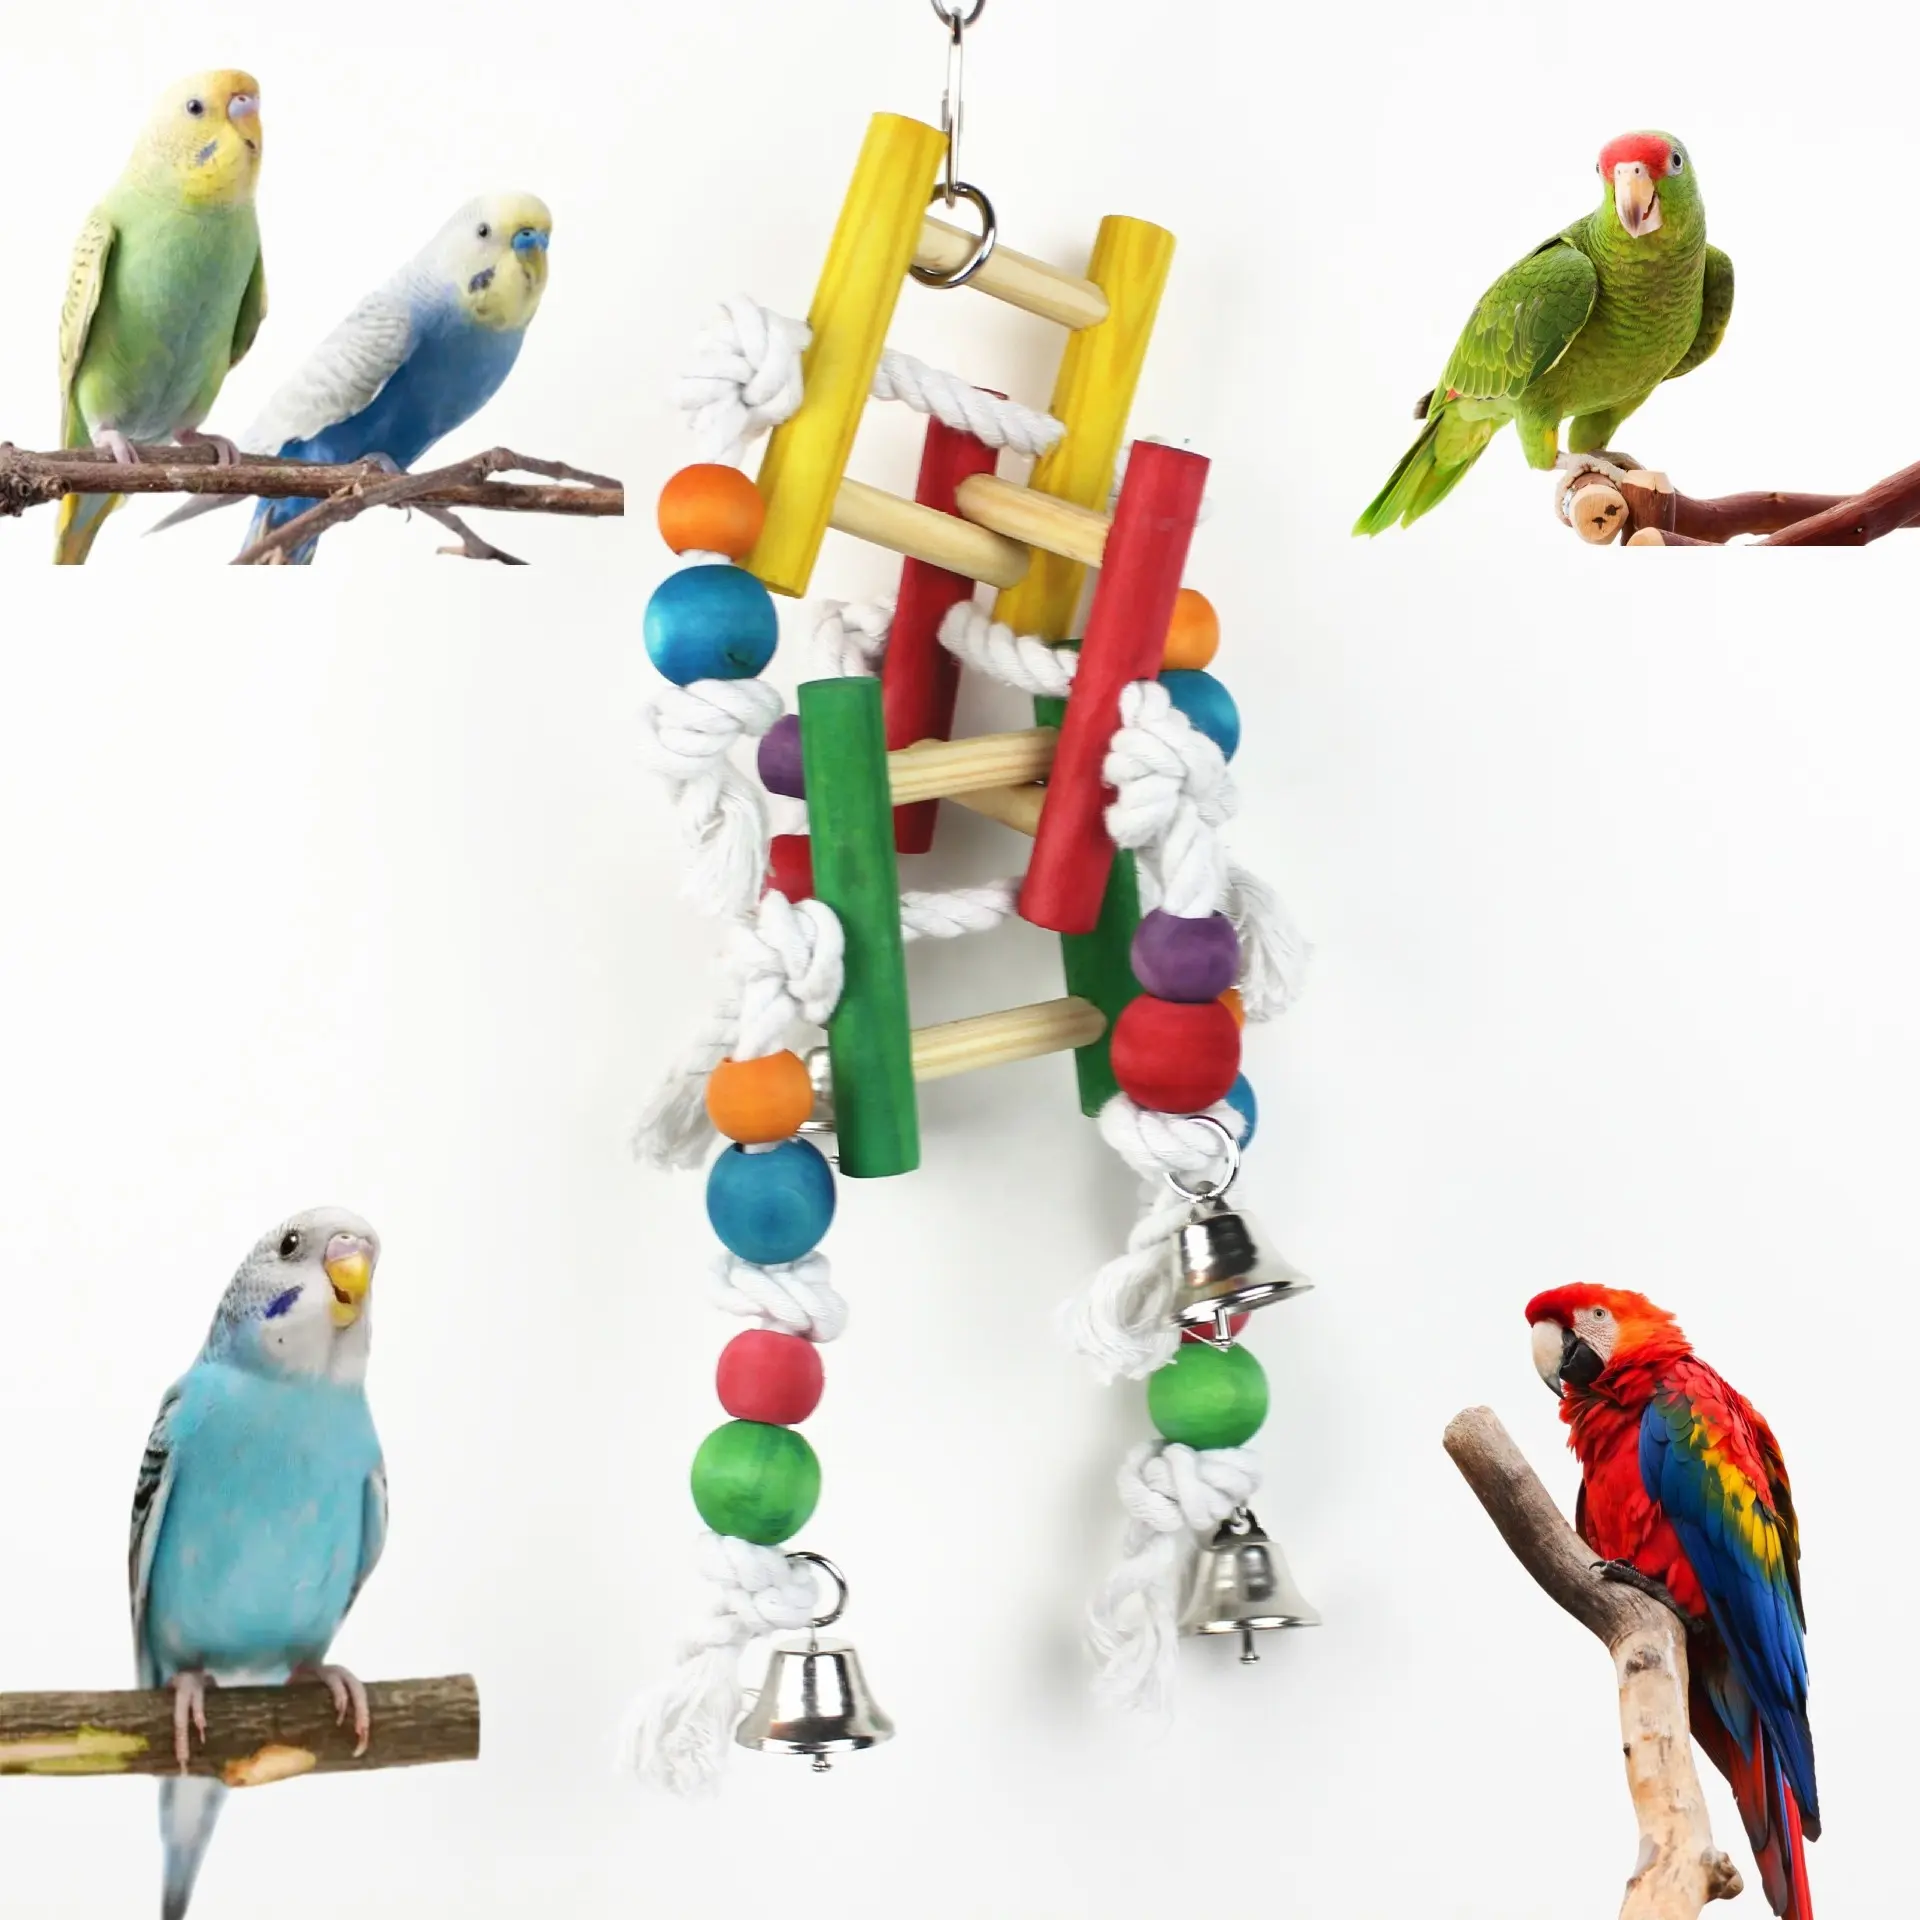 Của chim lồng đồ chơi phụ kiện tự nhiên leo thang gỗ Vẹt đu treo nhai cắn cầu